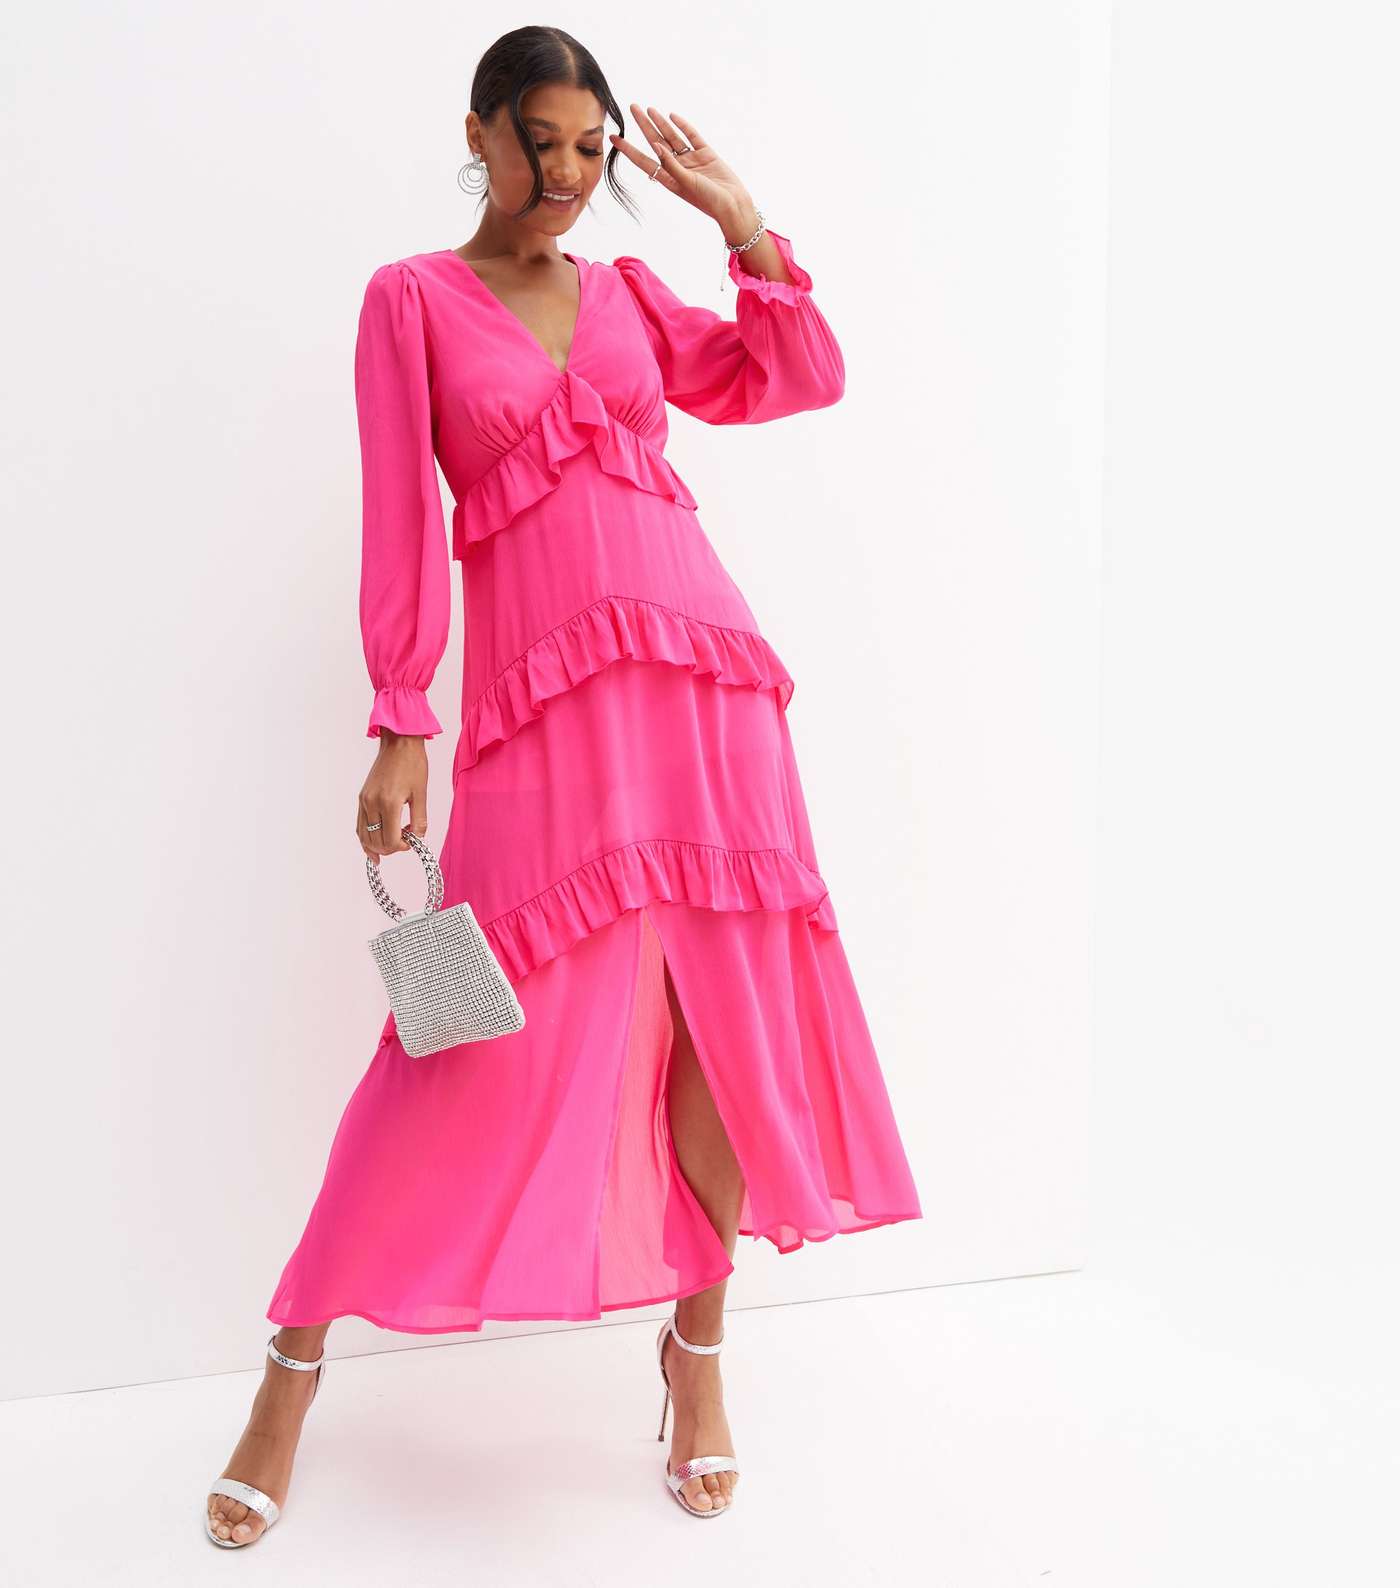 Bright Pink Chiffon Tiered Ruffle Long Sleeve Midi Dress Image 3